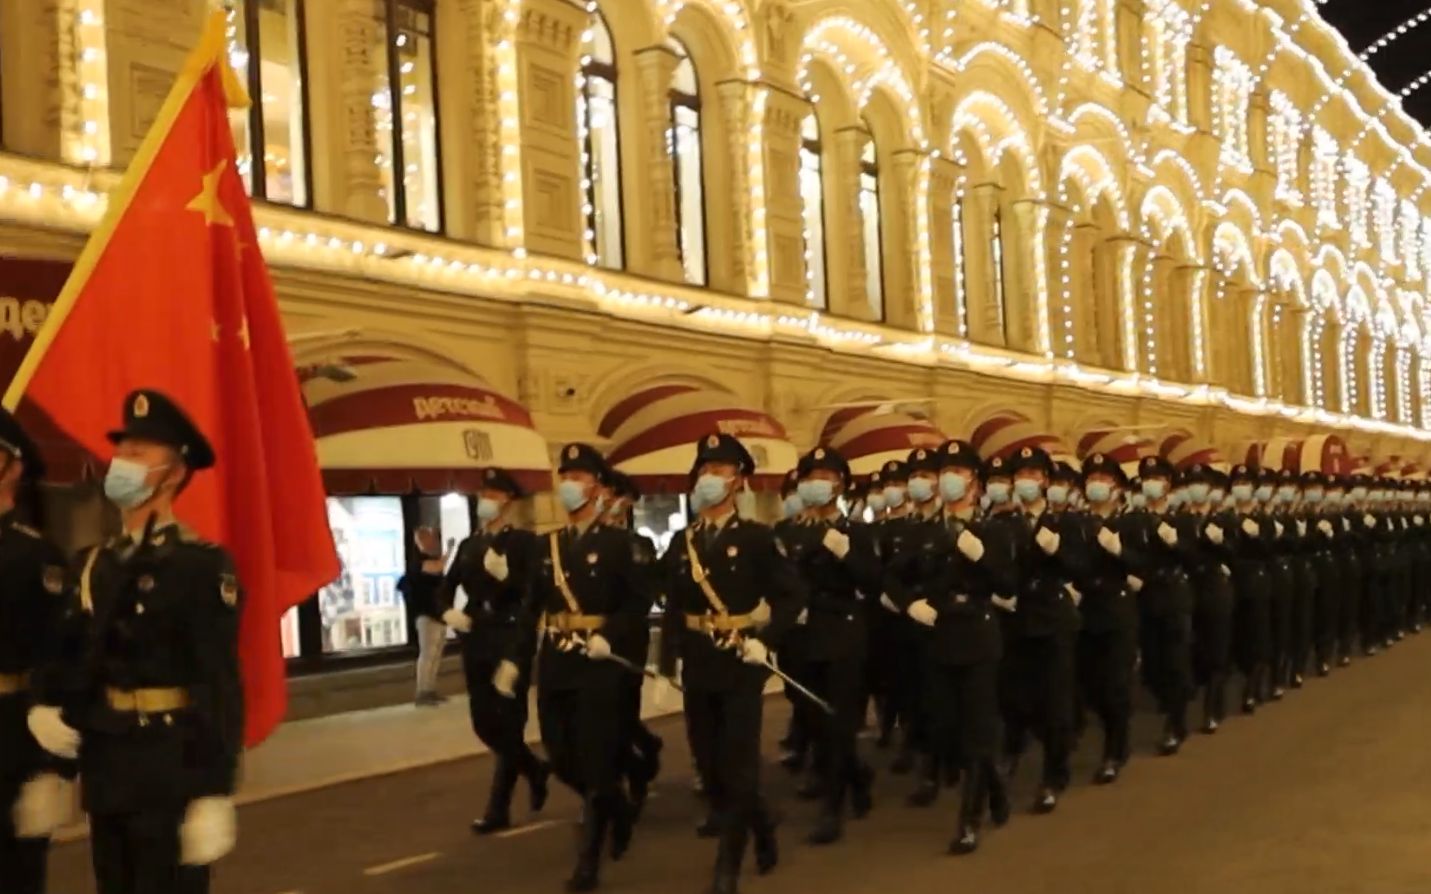 视频来了！中国人民解放军仪仗队亮相红场阅兵，这群小伙子是最帅的！